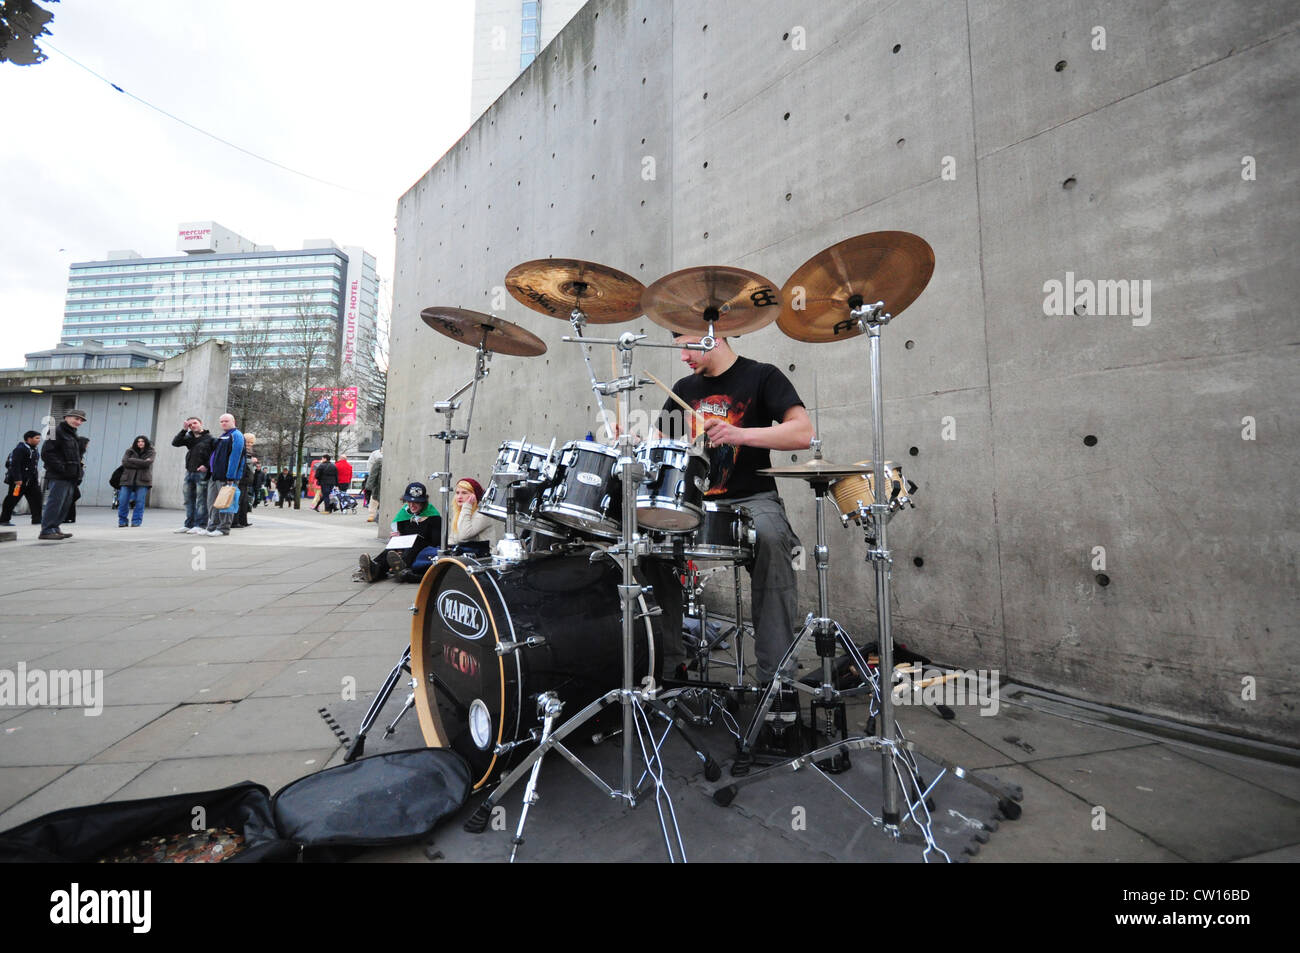 Straßenmusik Schlagzeuger in manchester Stockfotografie - Alamy